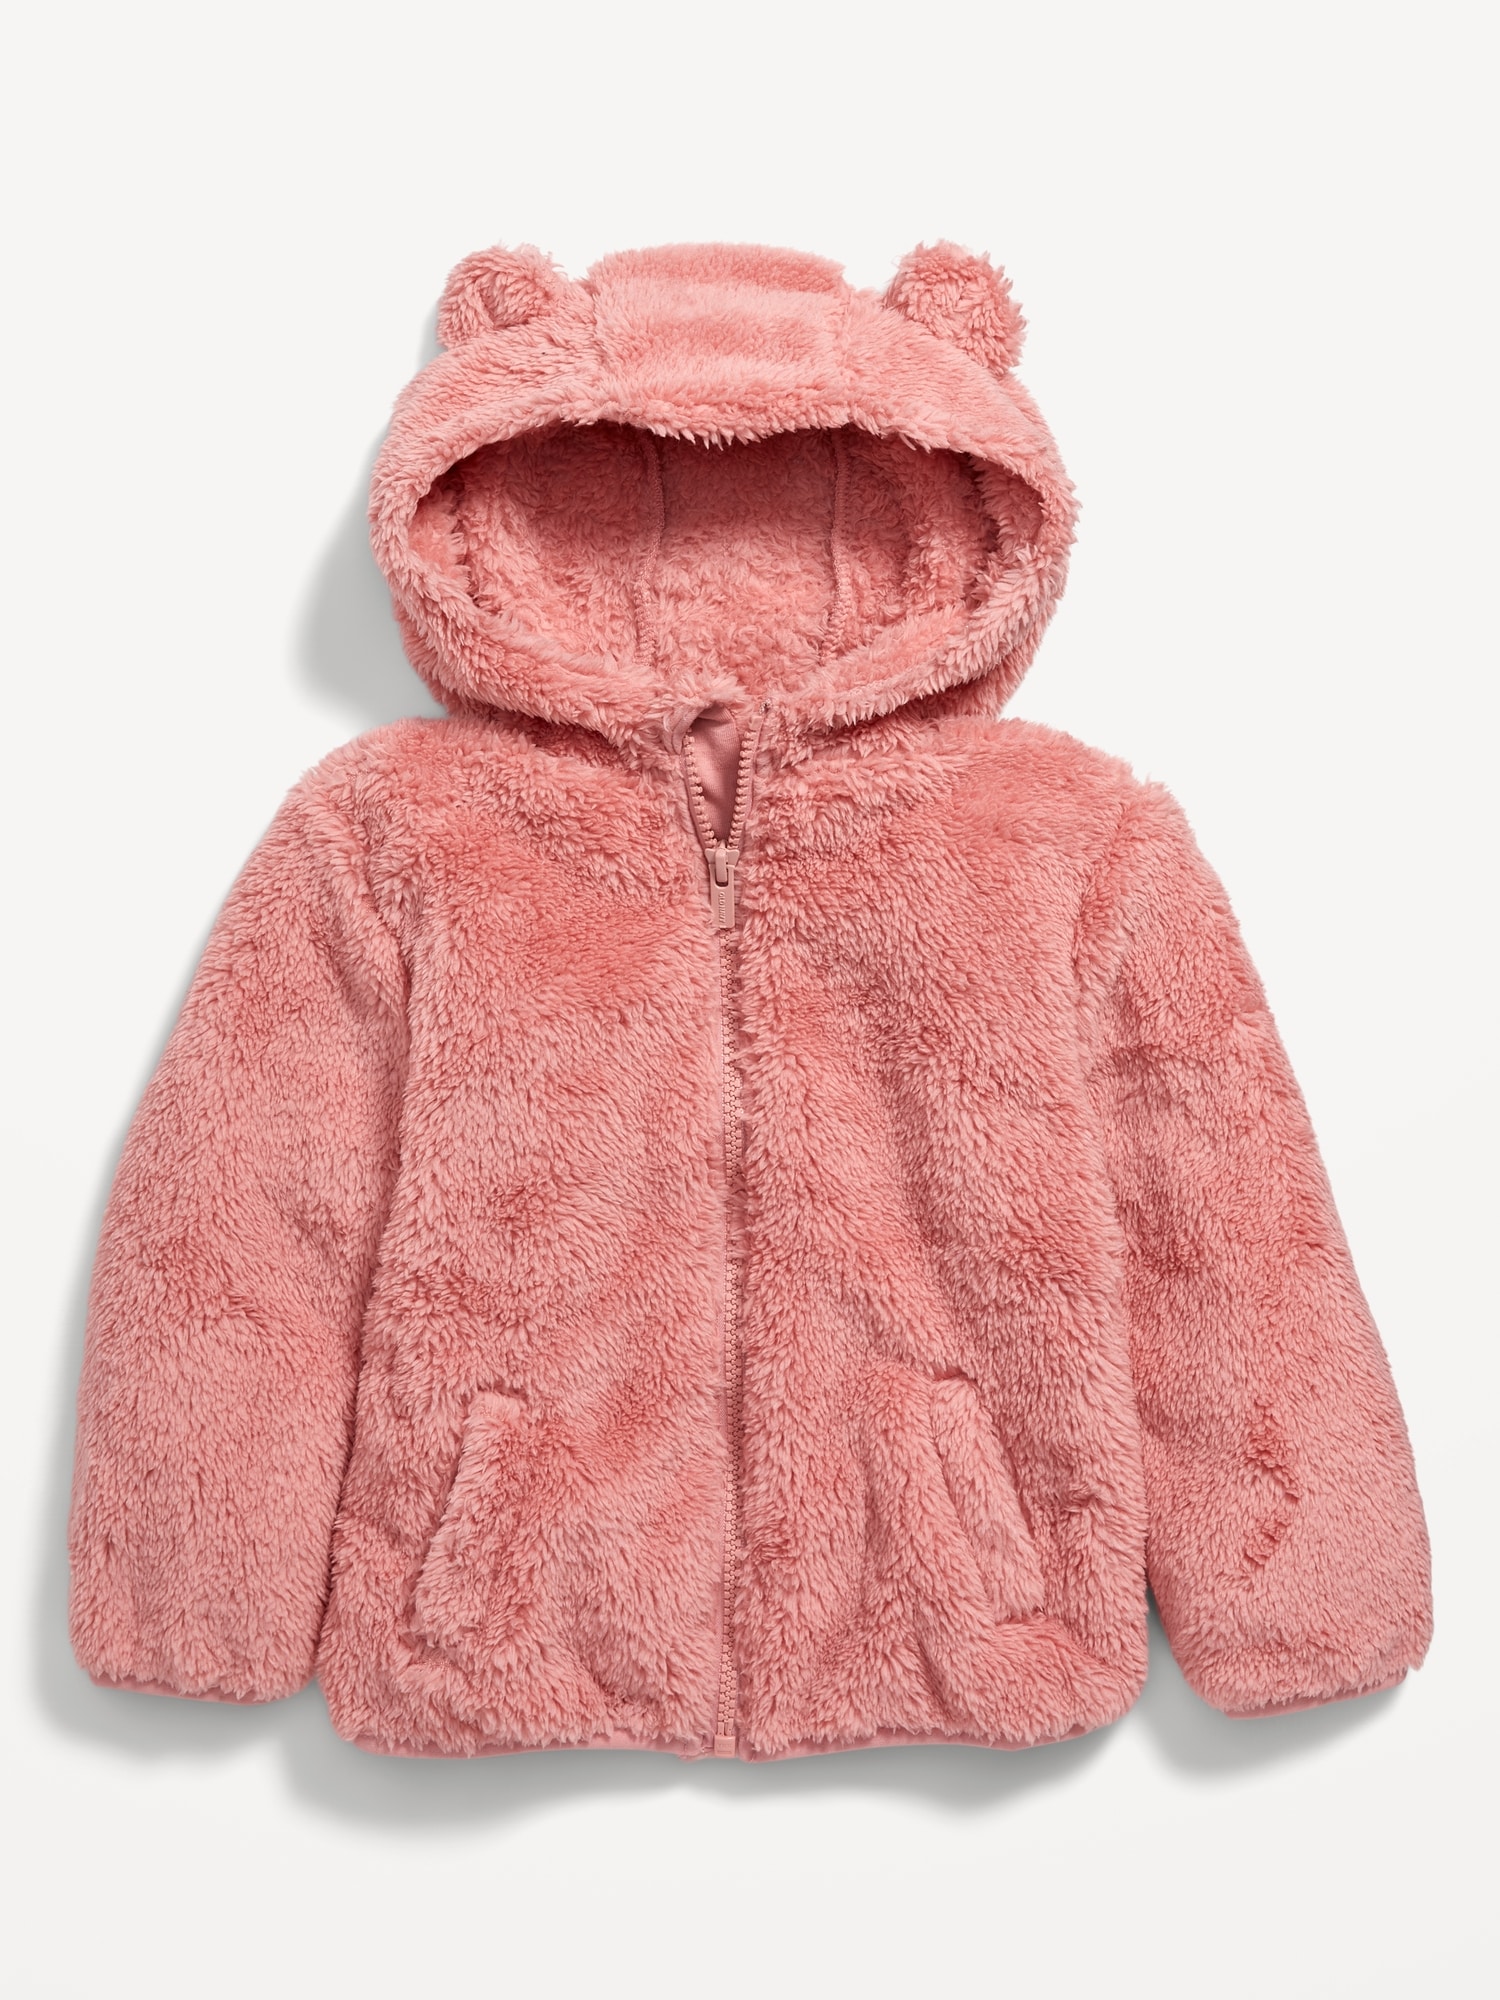 Teddy Bear Jacket - Pink/patterned - Kids